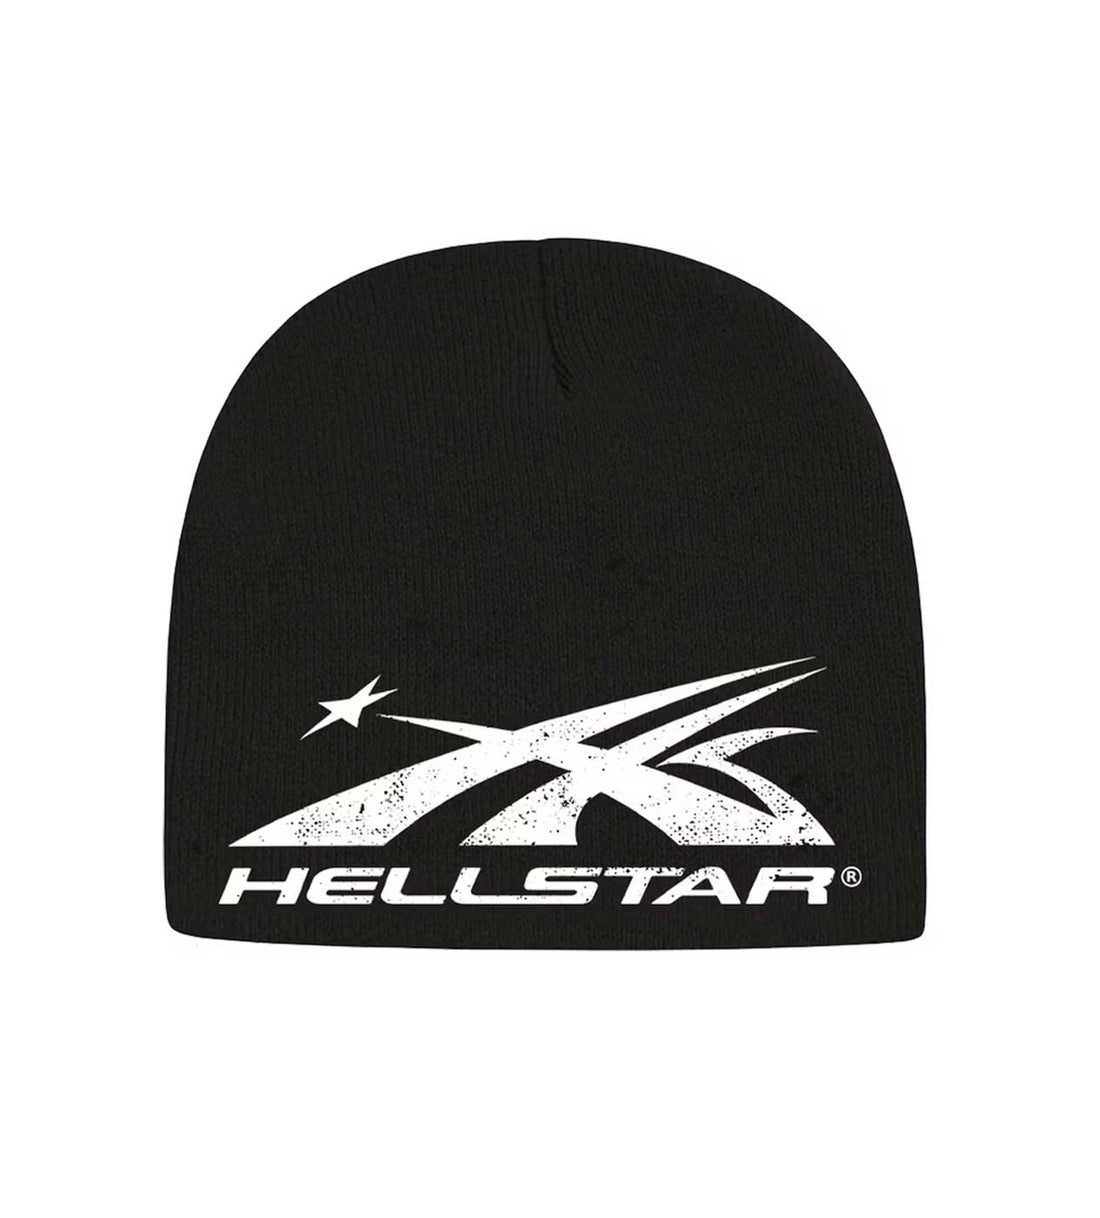 Hellstar Studios Hellstar Logo Beanie Black